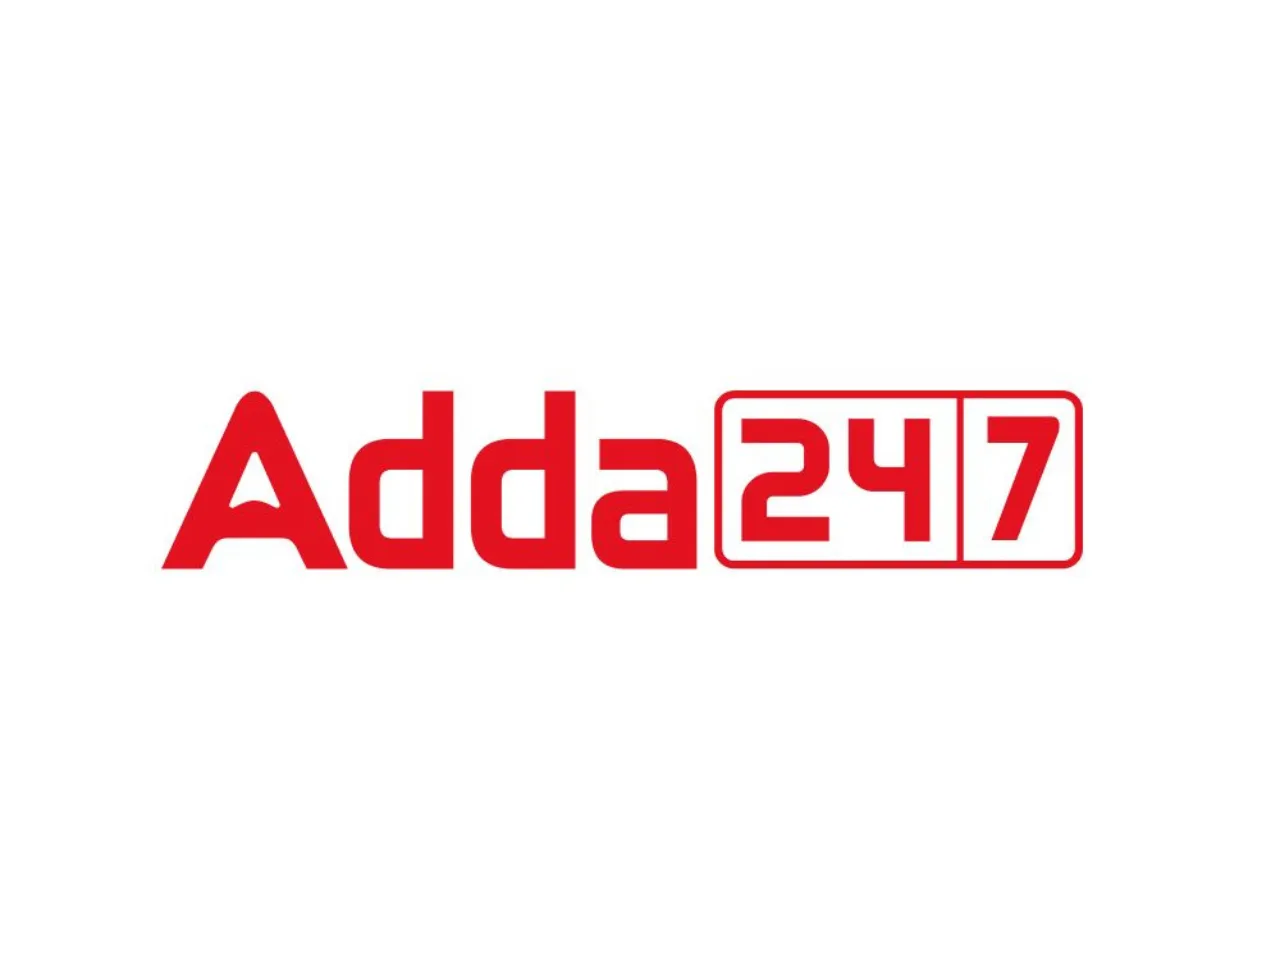 Adda247 